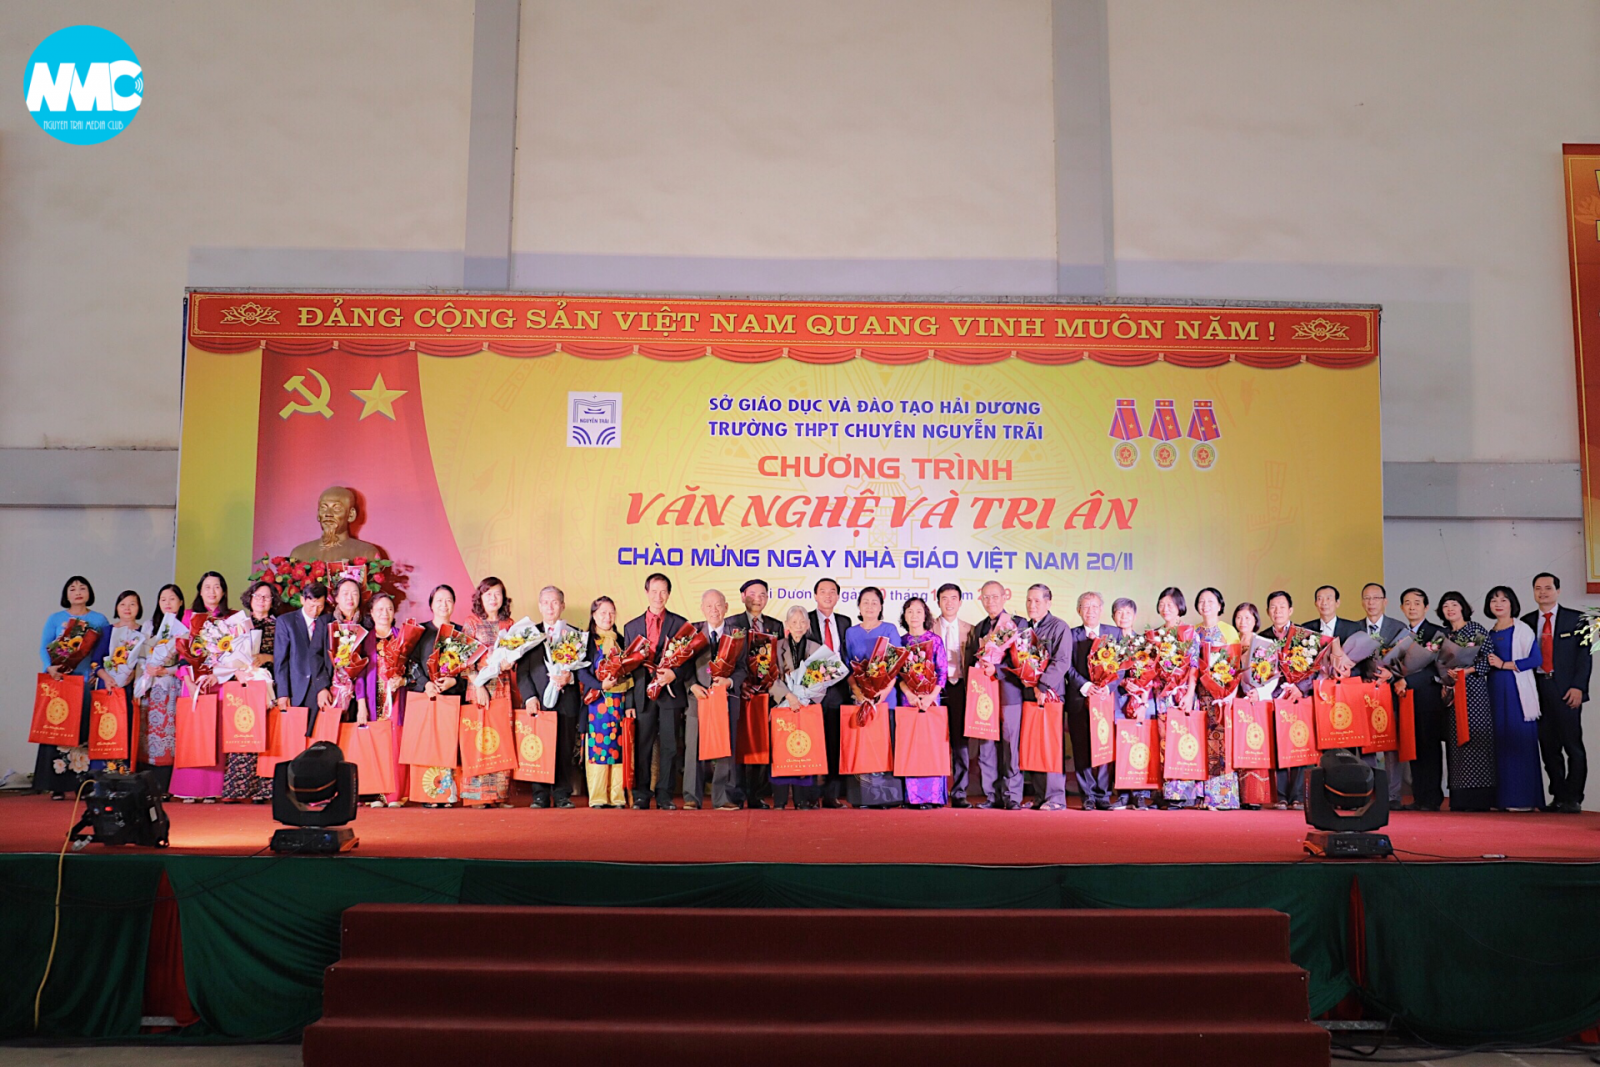 Chương trình văn nghệ và tri ân Chào mừng ngày Nhà giáo Việt Nam 20-11